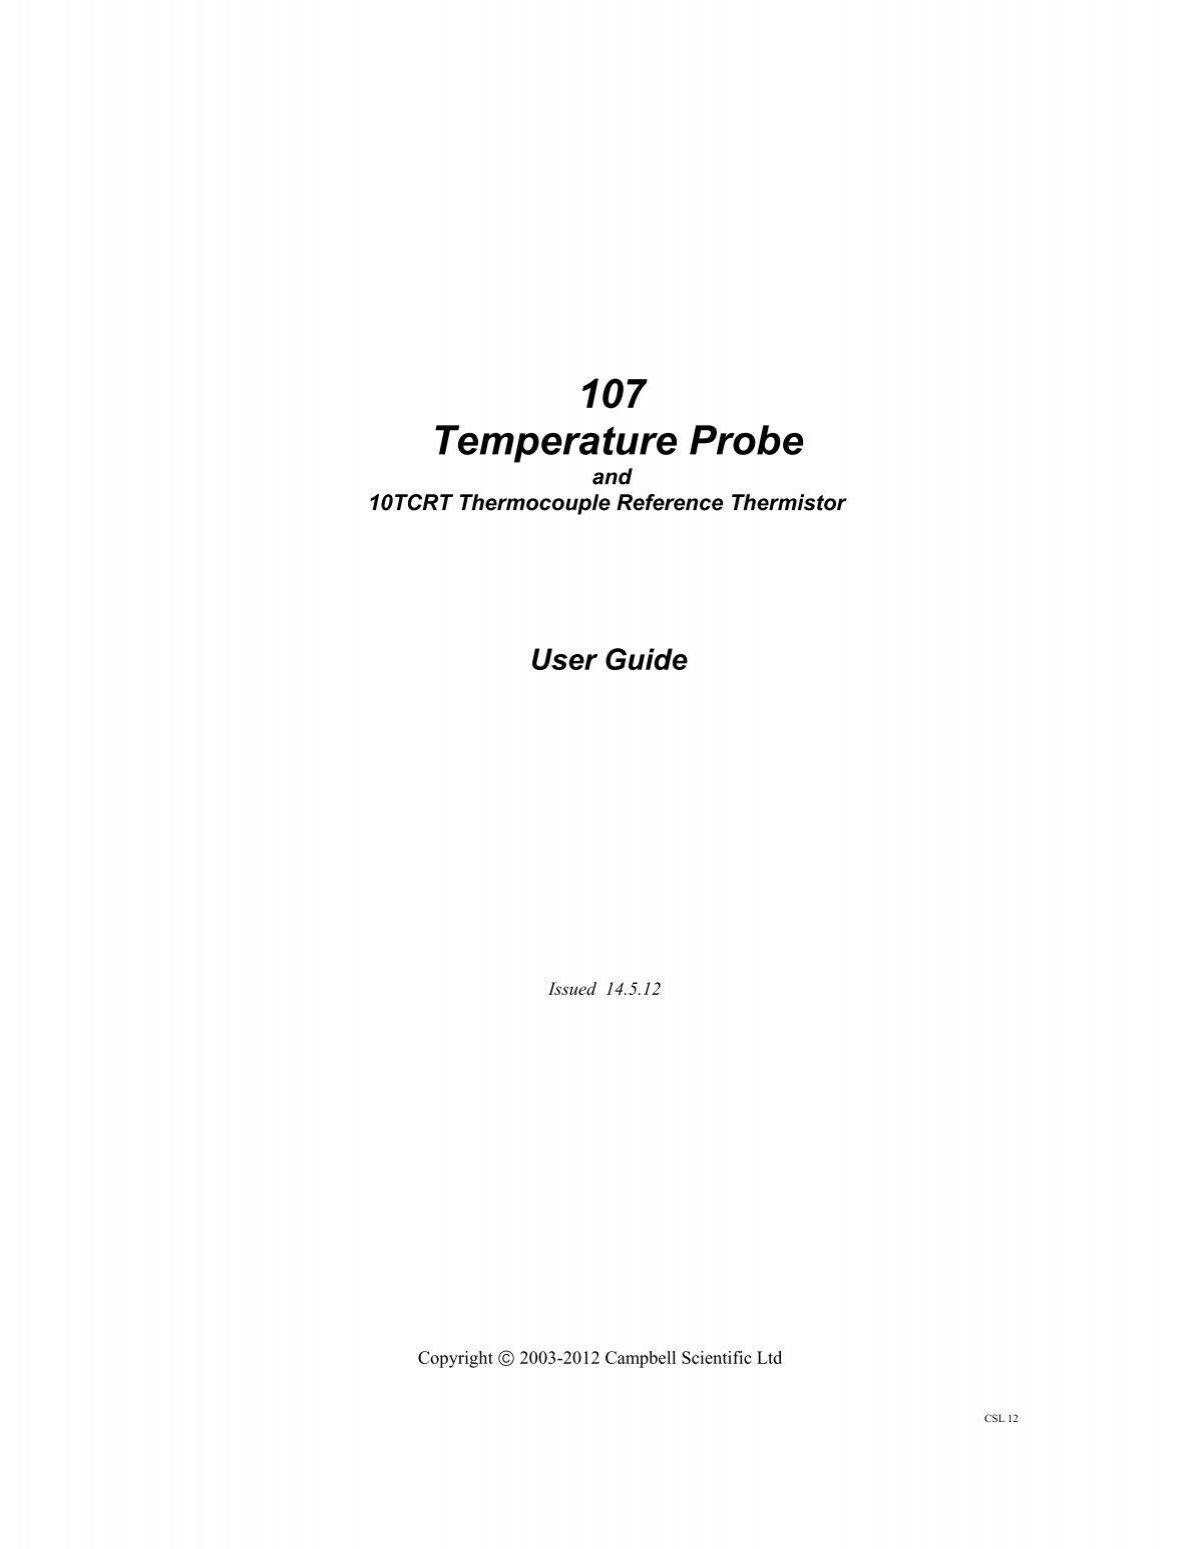 107: Temperature Probe